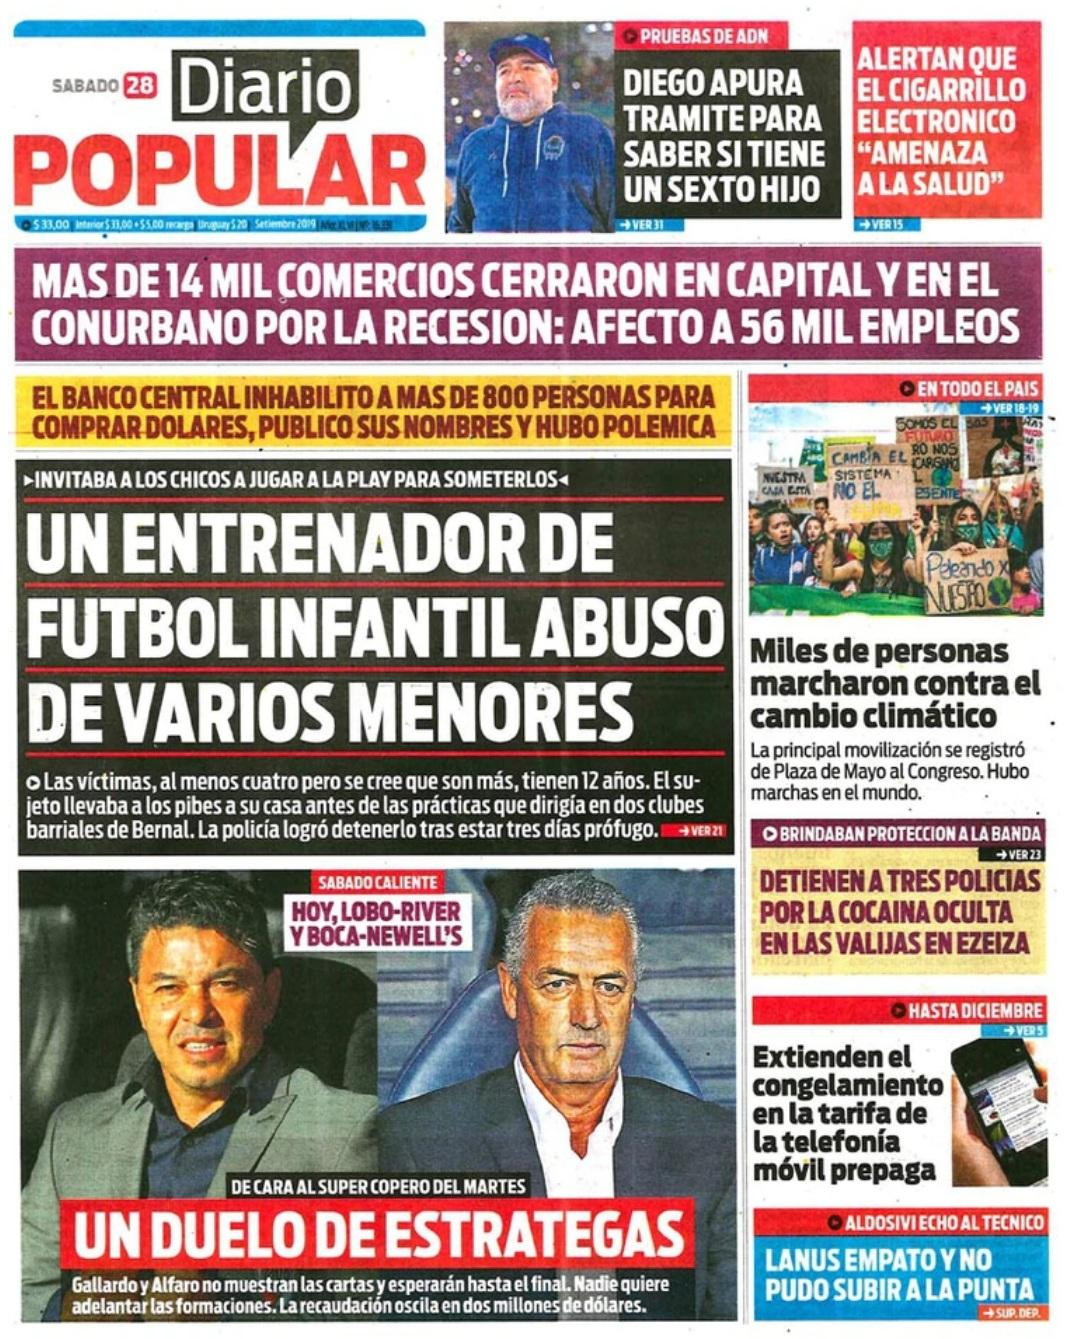 Tapas de Diarios - Popular - Sábado 28-9-19	